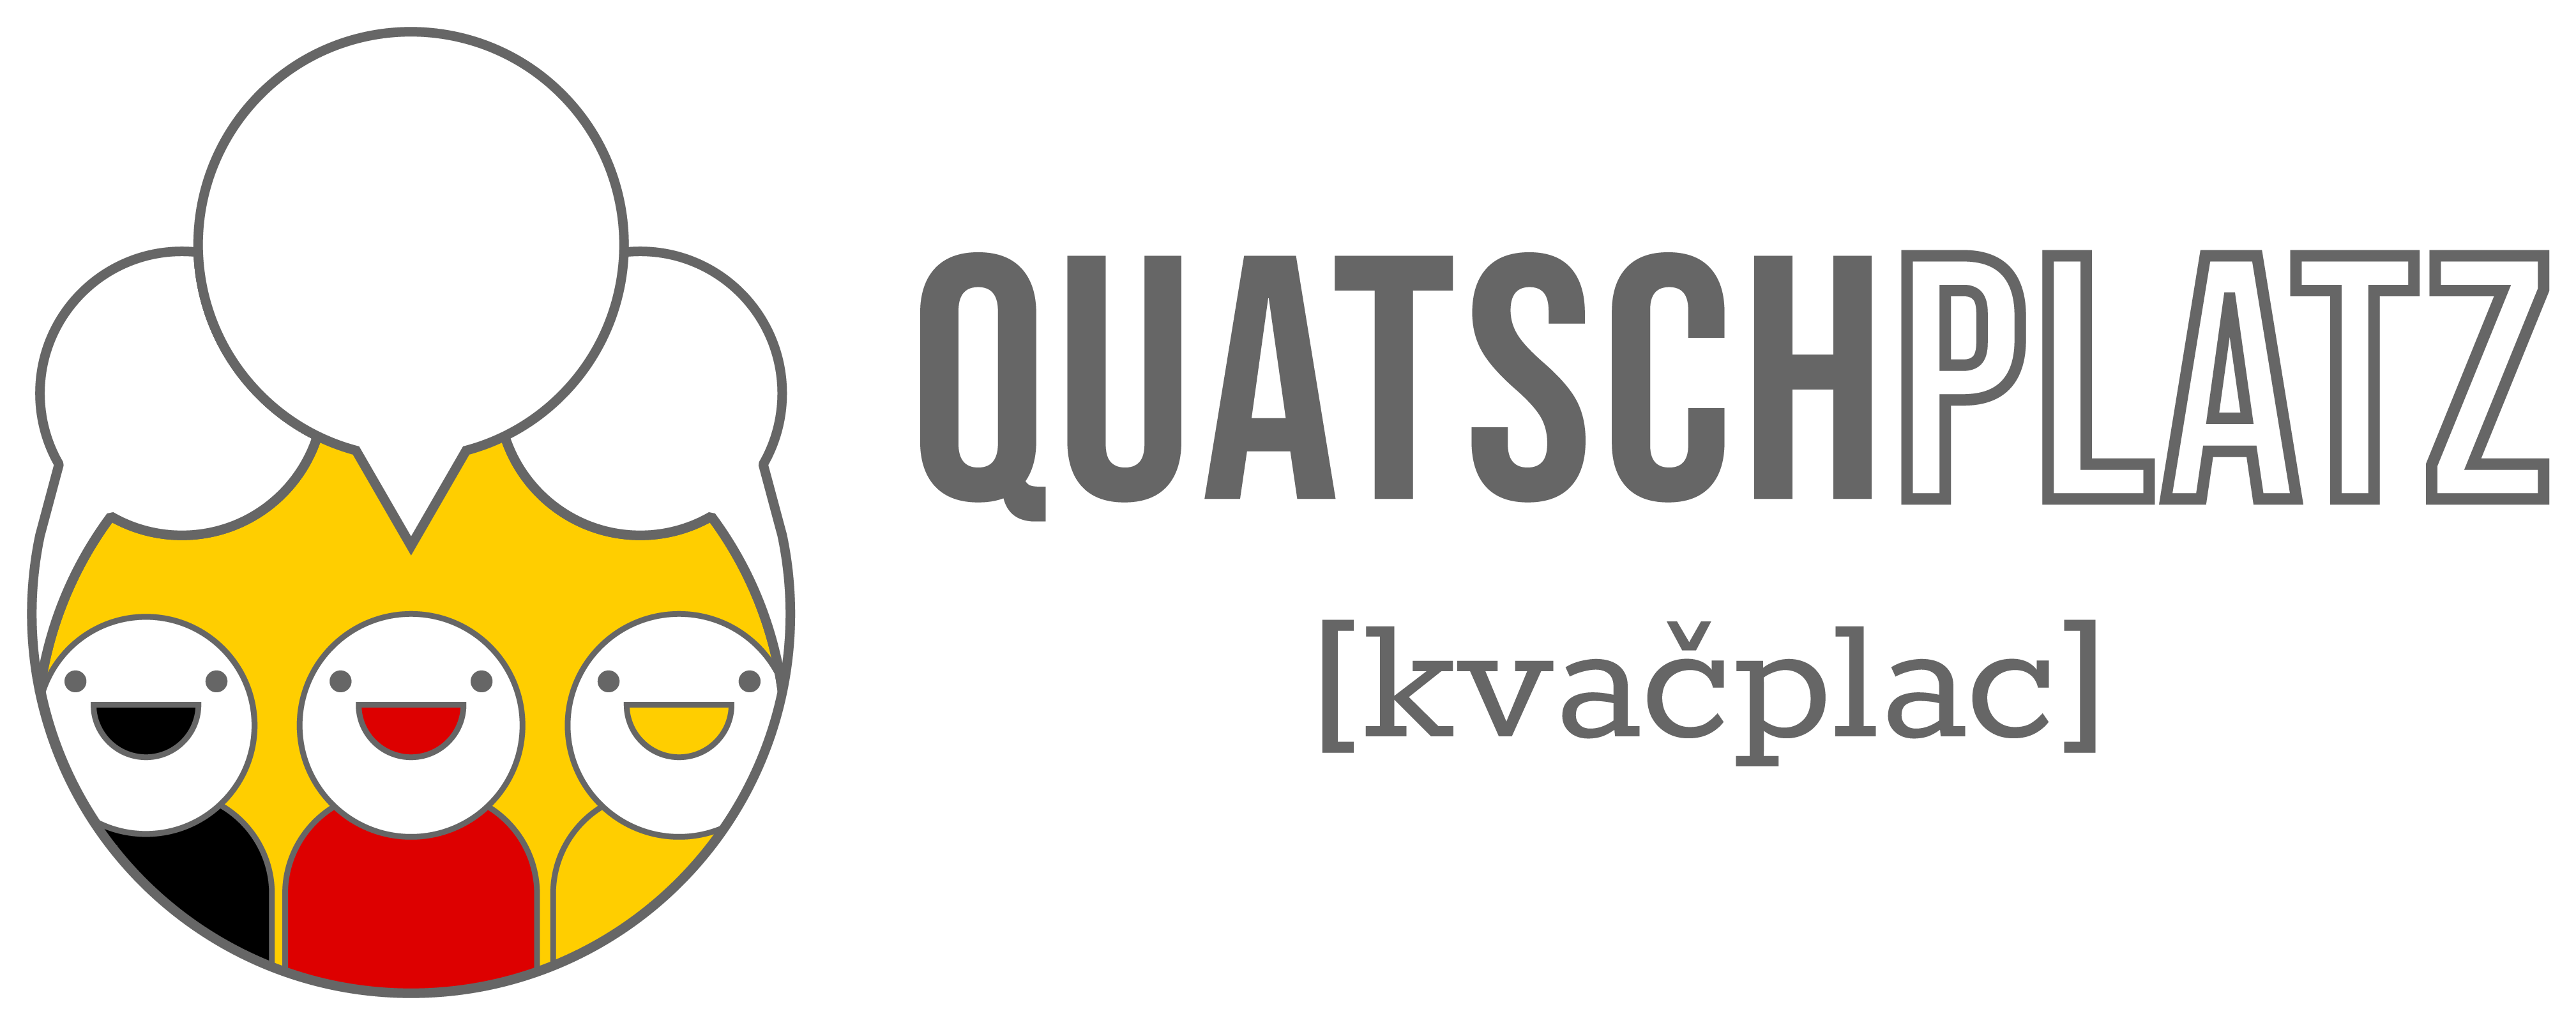 Quatschplatz.cz